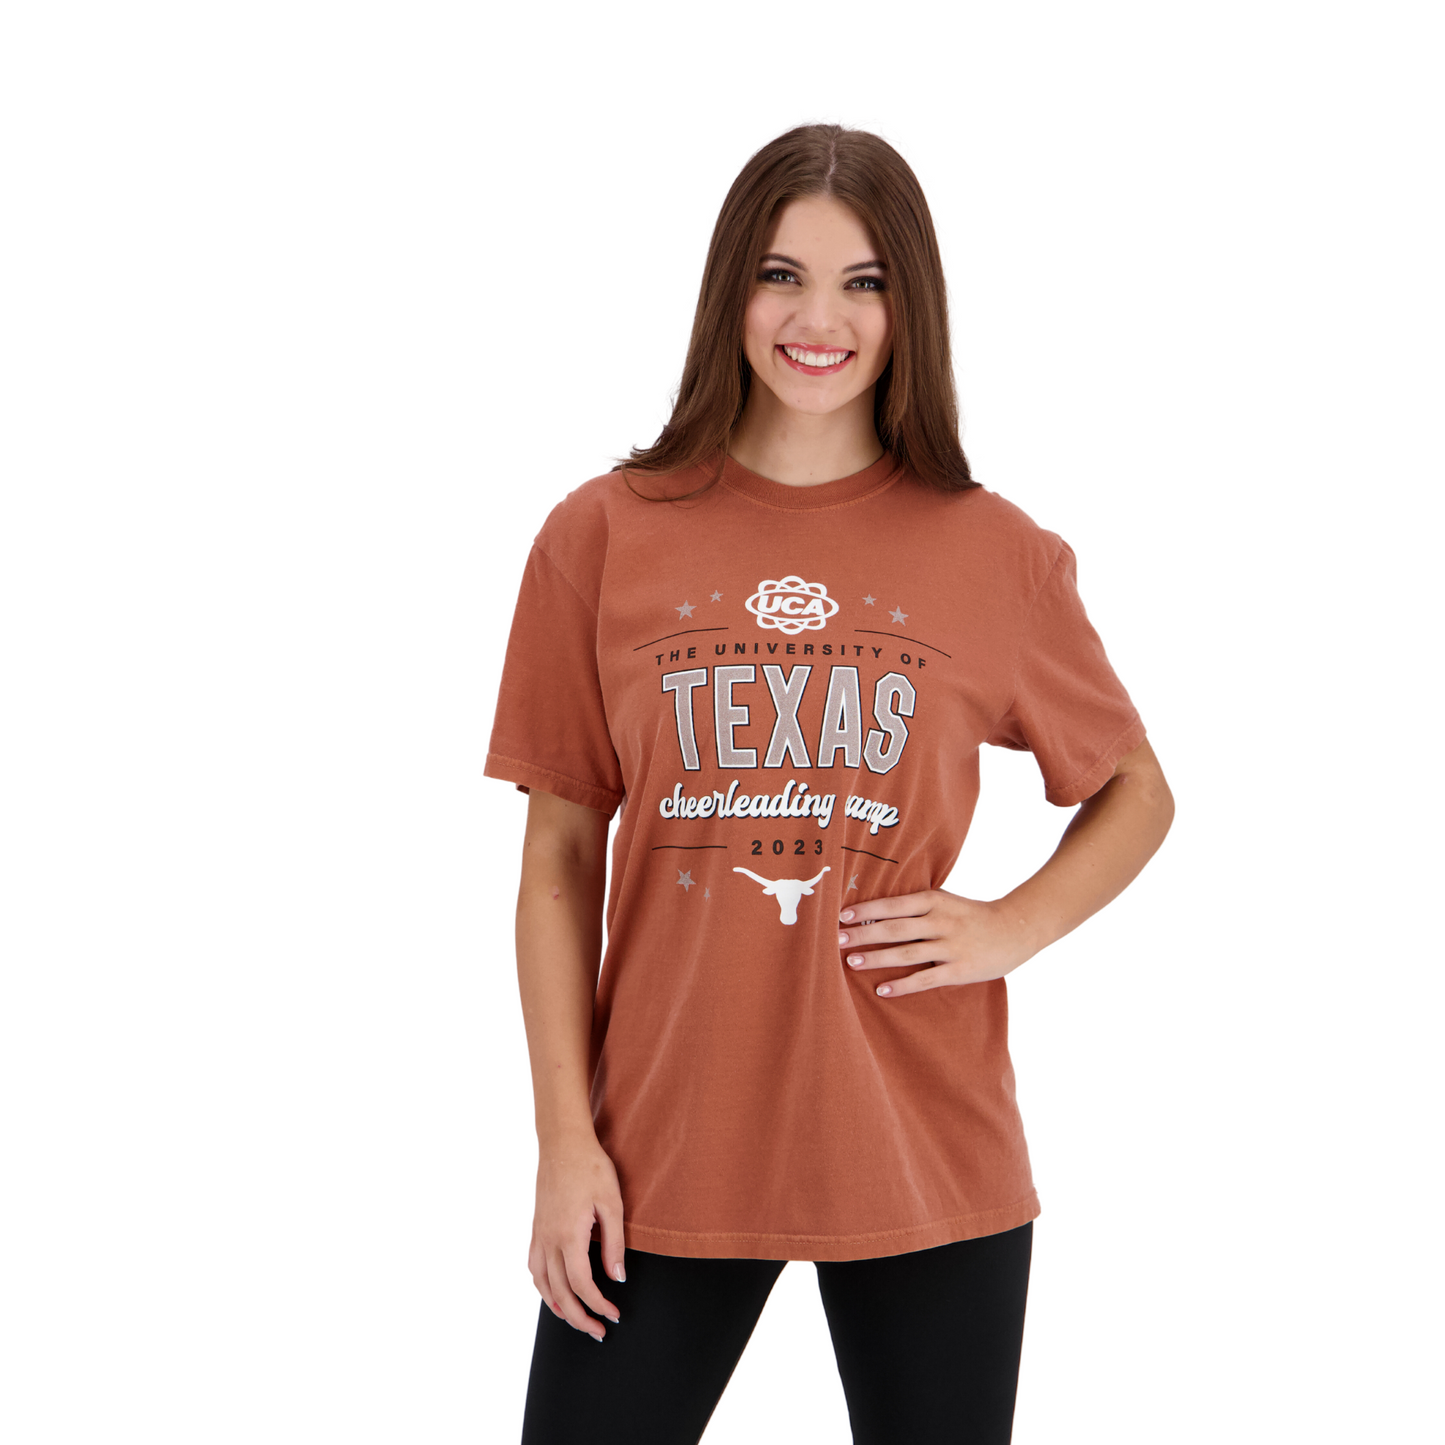 UCA Texas Summer Cheer Camp Tshirt